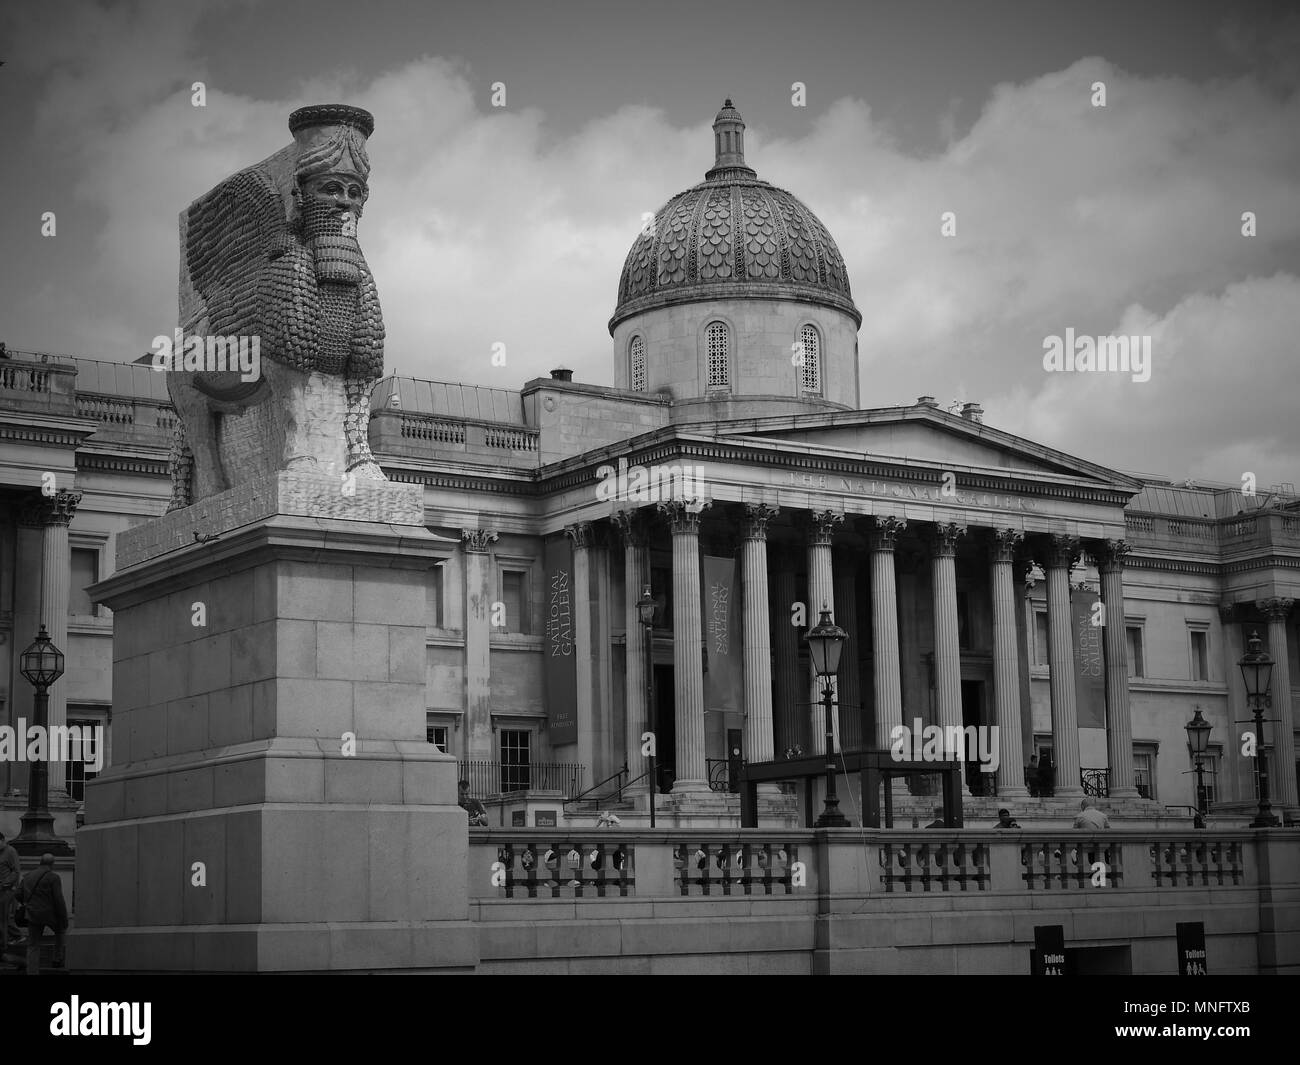 LONDON - 10. MAI 2018: (Bild digital geändert werden monochrom) Fourth Plinth an einem sonnigen Tag auf dem Trafalgar Square der unsichtbare Feind sollte nicht vorhanden Stockfoto